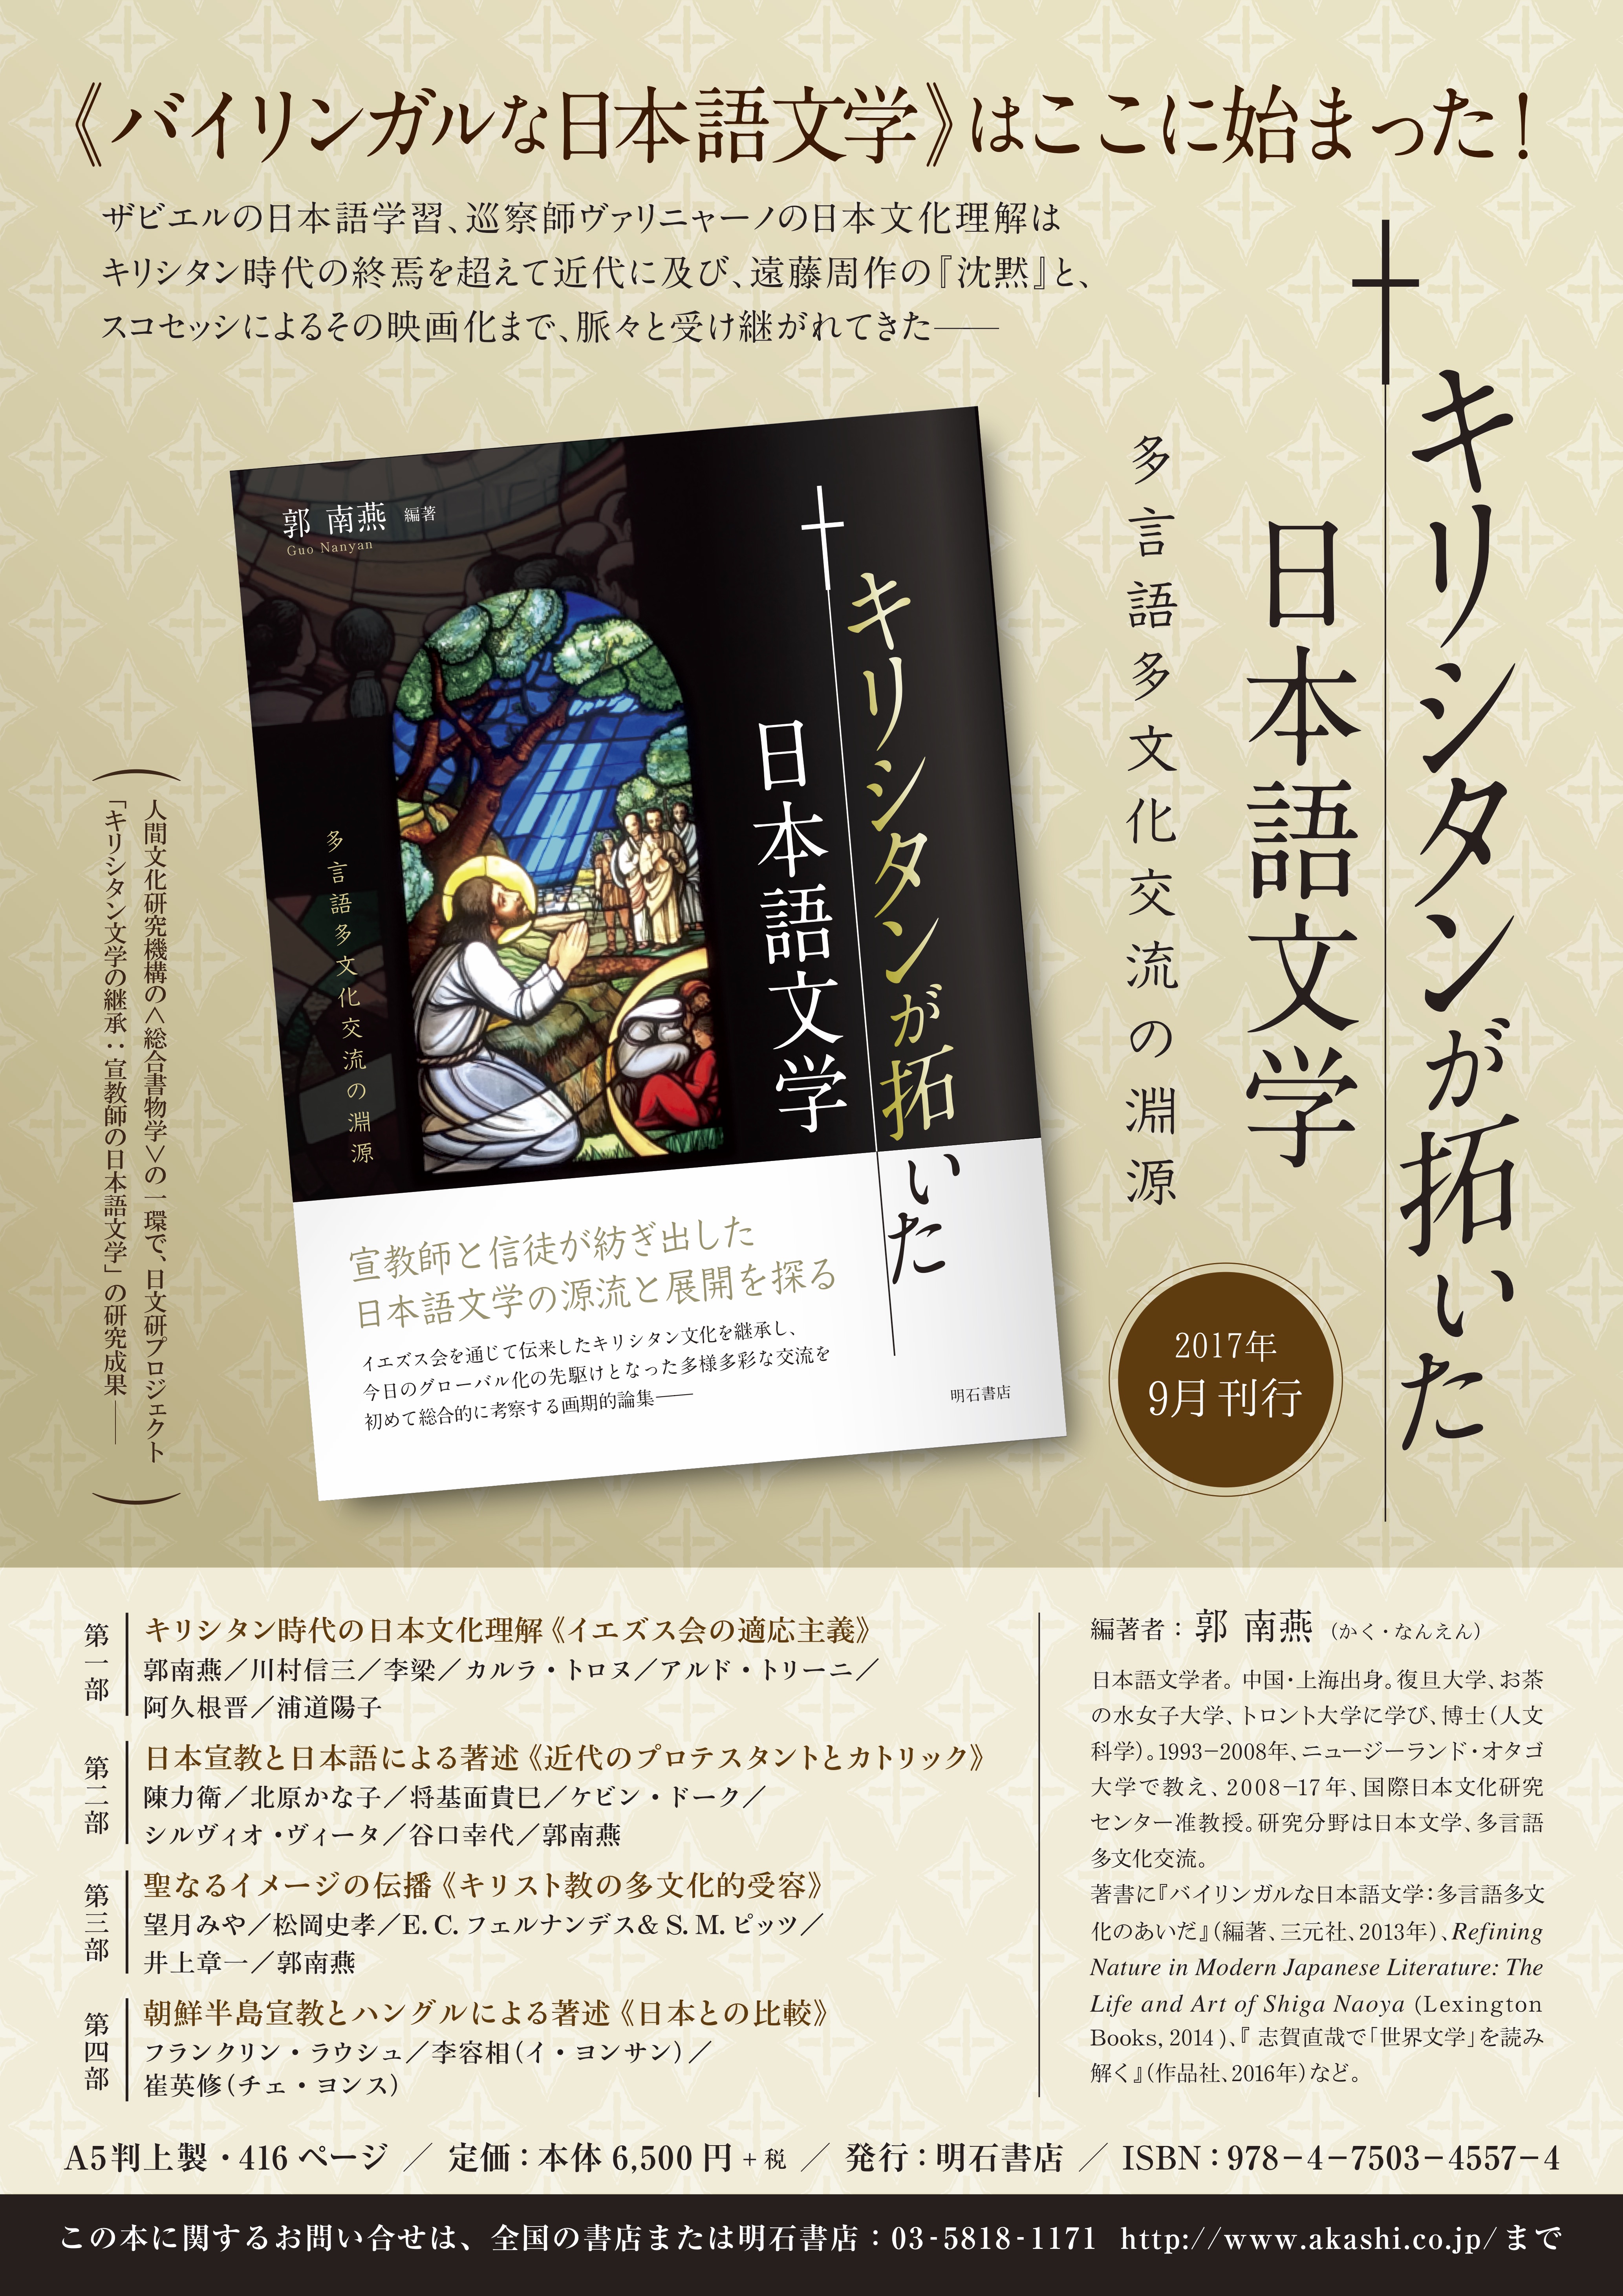 キリシタンが拓いた日本語文学：多言語多文化交流の淵源』の2つの論文の翻訳を担当しました | 特定非営利活動法人 ratik（NPO法人  らてぃっく）学術電子書籍出版